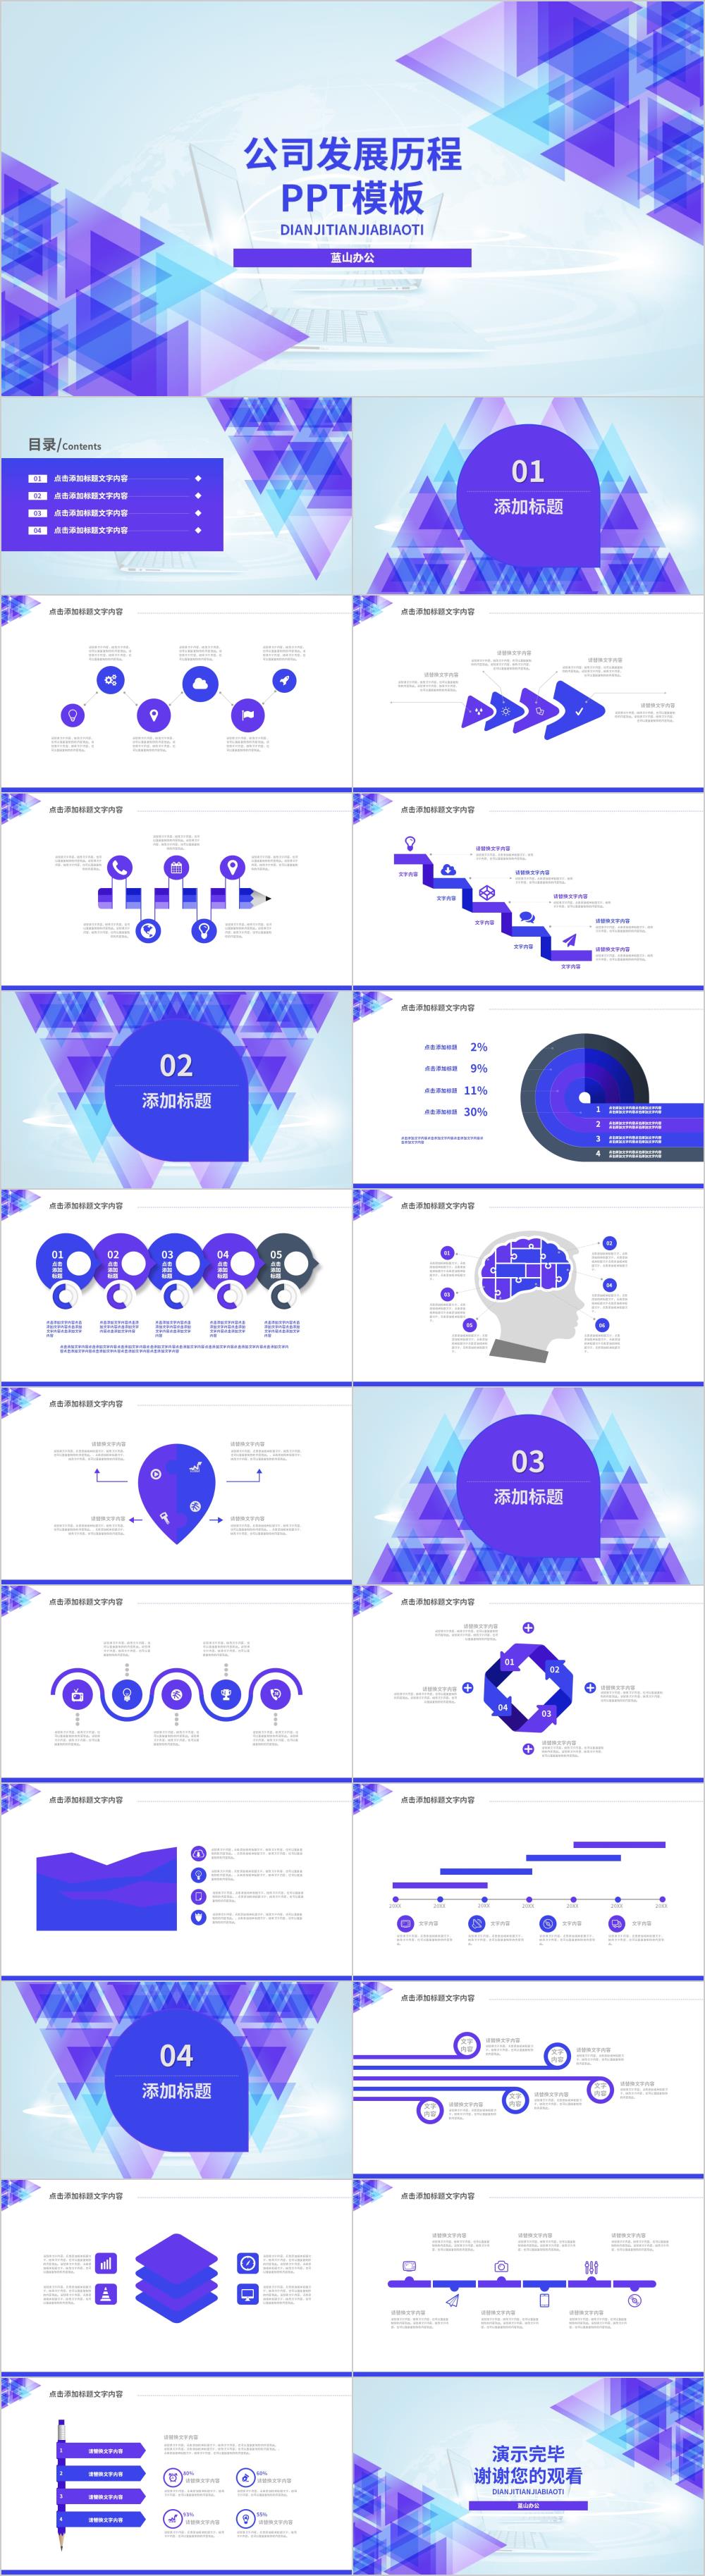 紫色几何体公司发展历程PPT模板